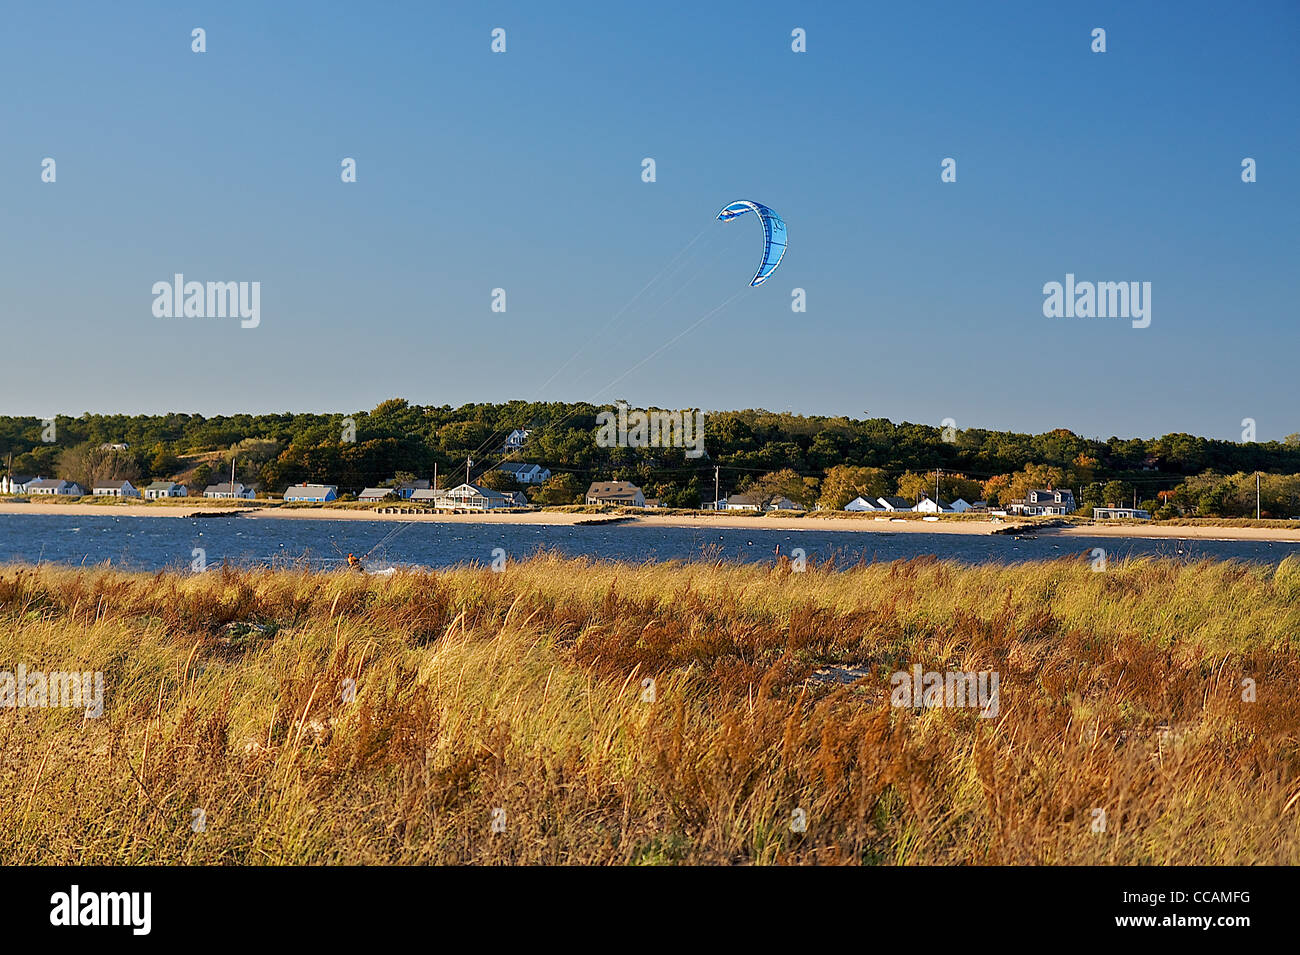 Une vue de l'automne un kitesurfeur dans le passé, de distance, d'herbes de marais en automne Banque D'Images